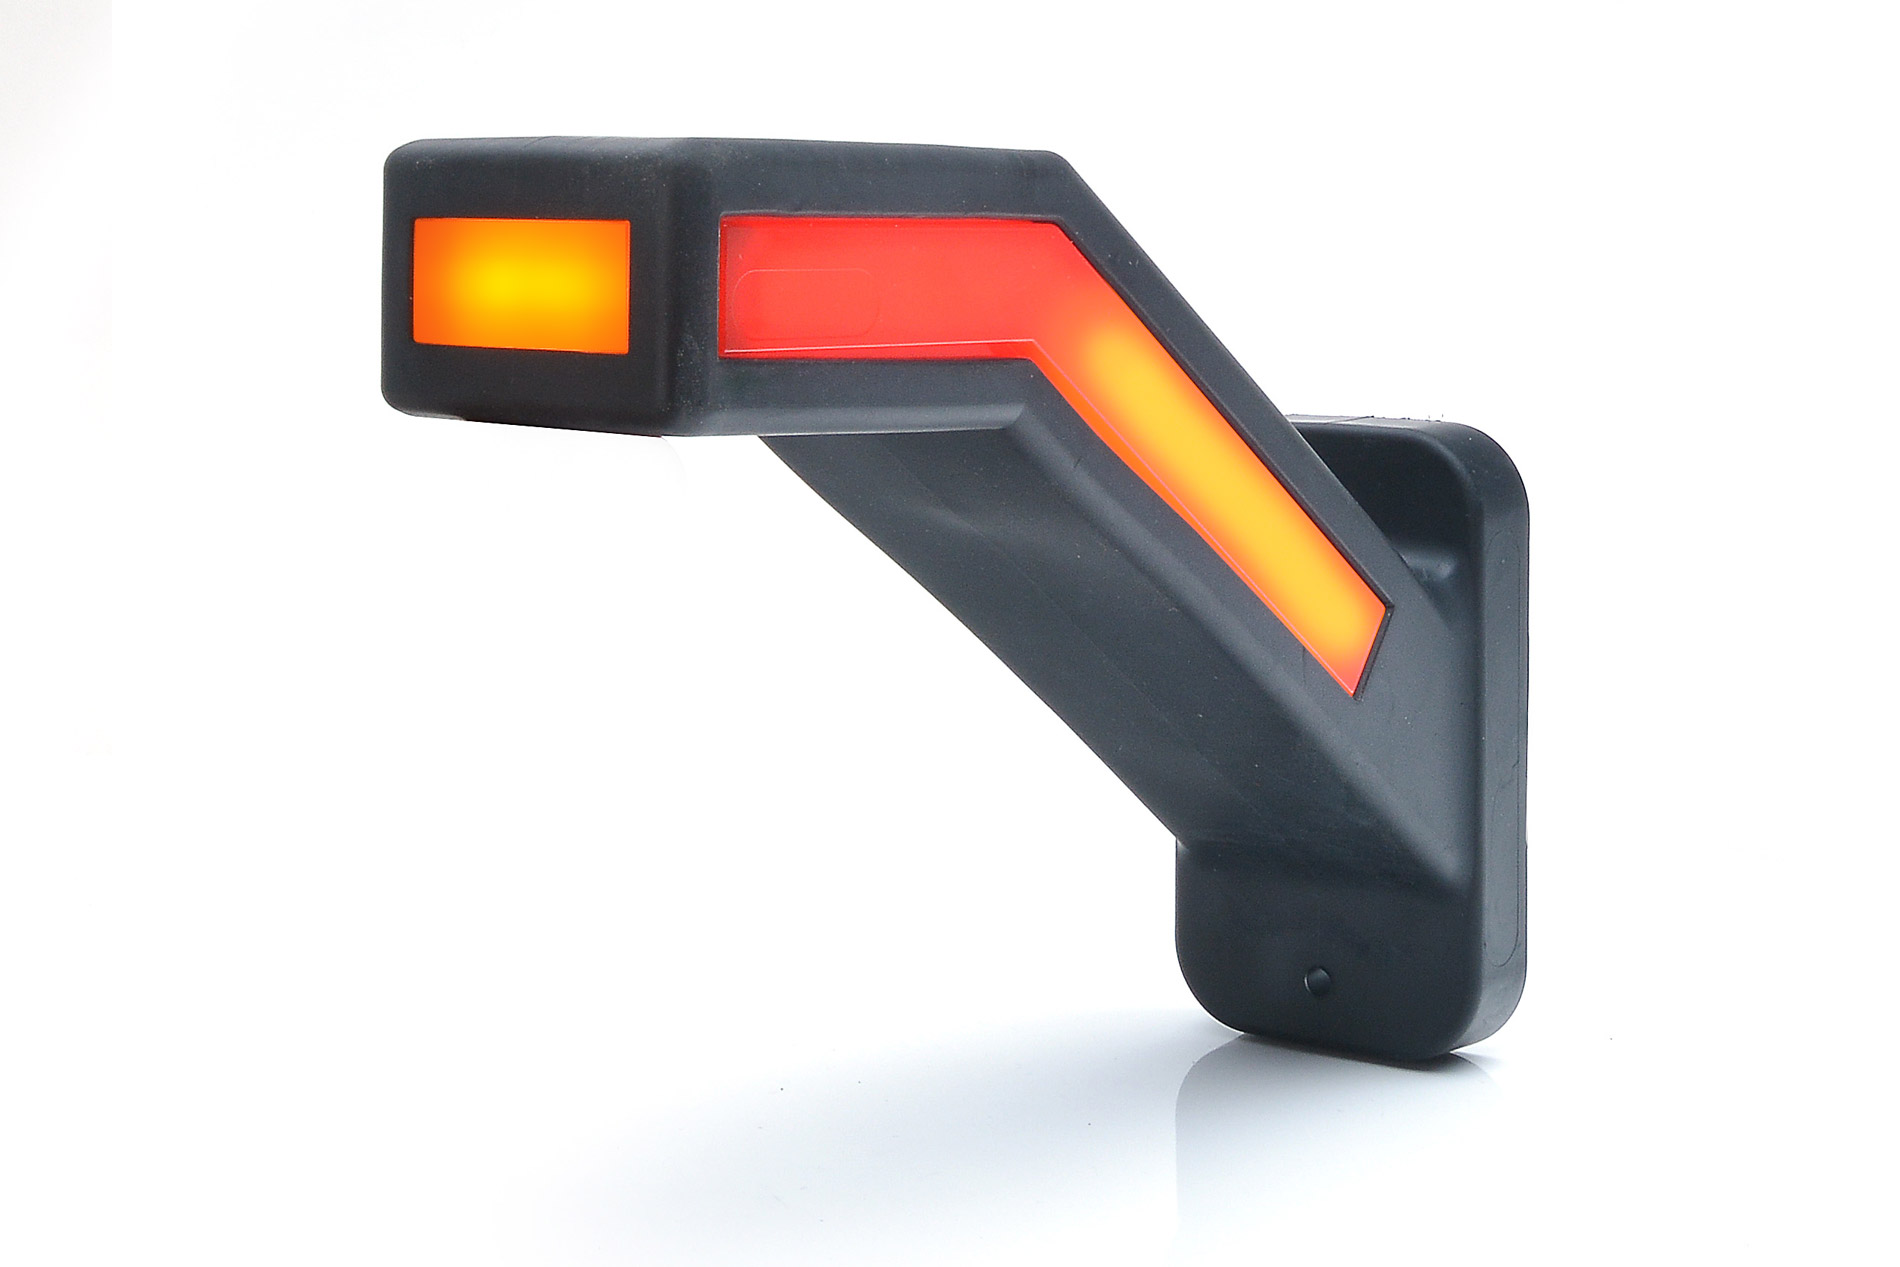 Lămpi de poziție și marcaj - Lampă Neonled, WAS, oblică marcaj stânga, cu semnalizare dinamică, LED 3 culori, W 168, fomcoshop.ro